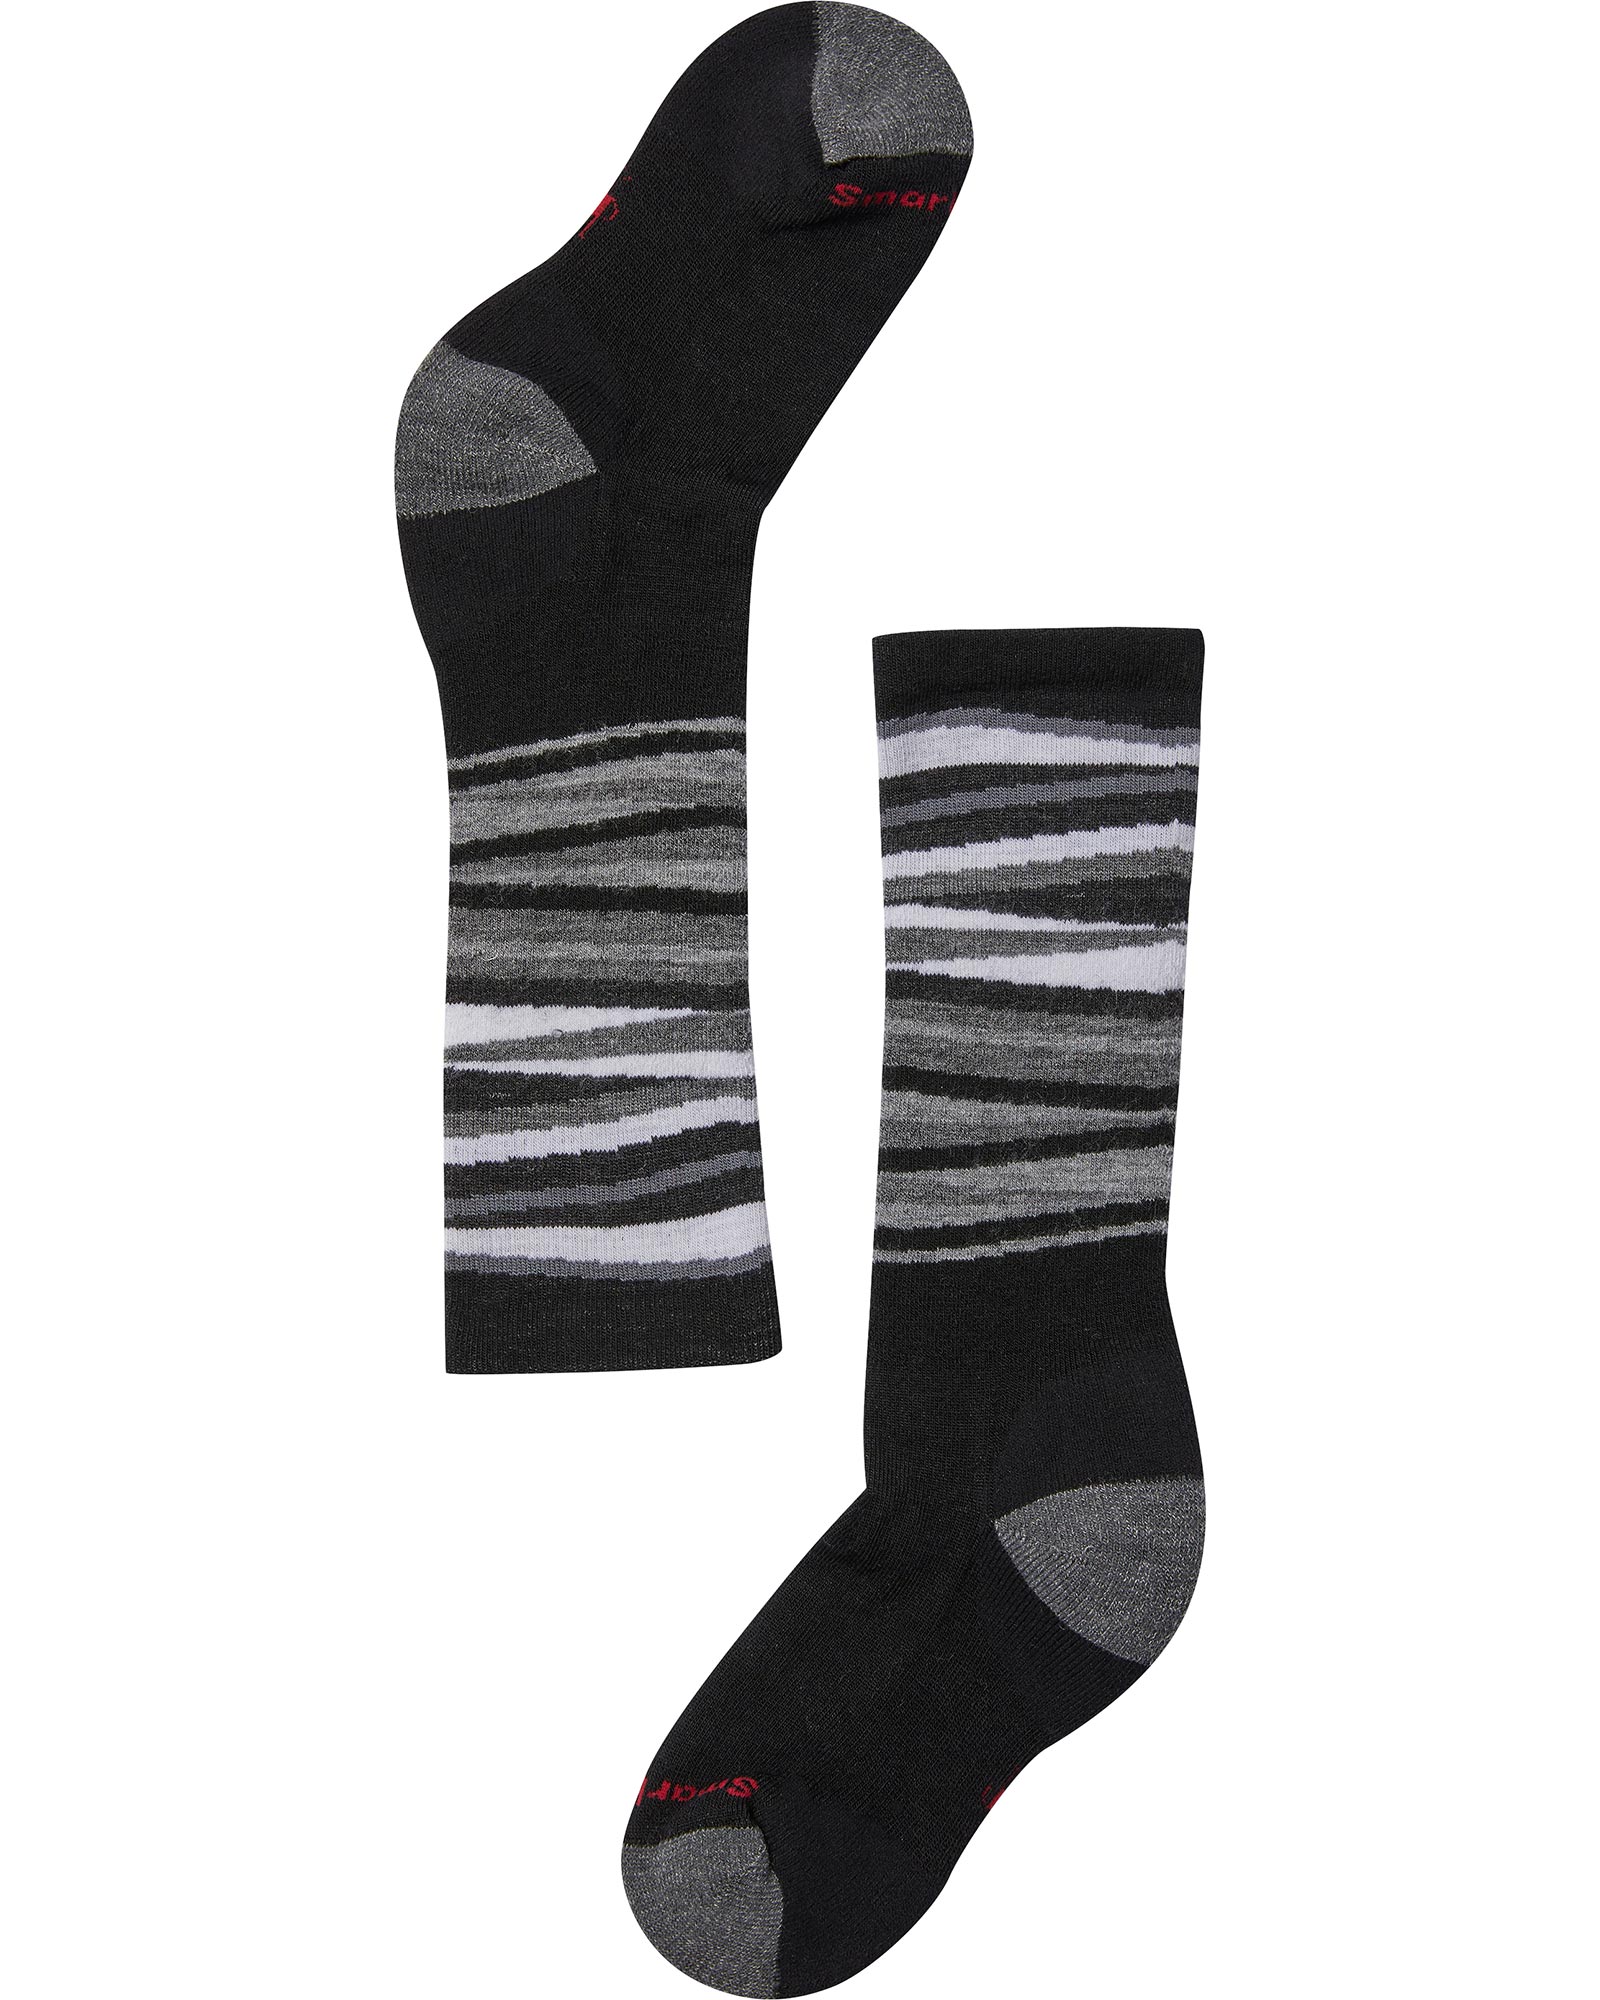 Smartwool Wintersport Stripe Kids Socks